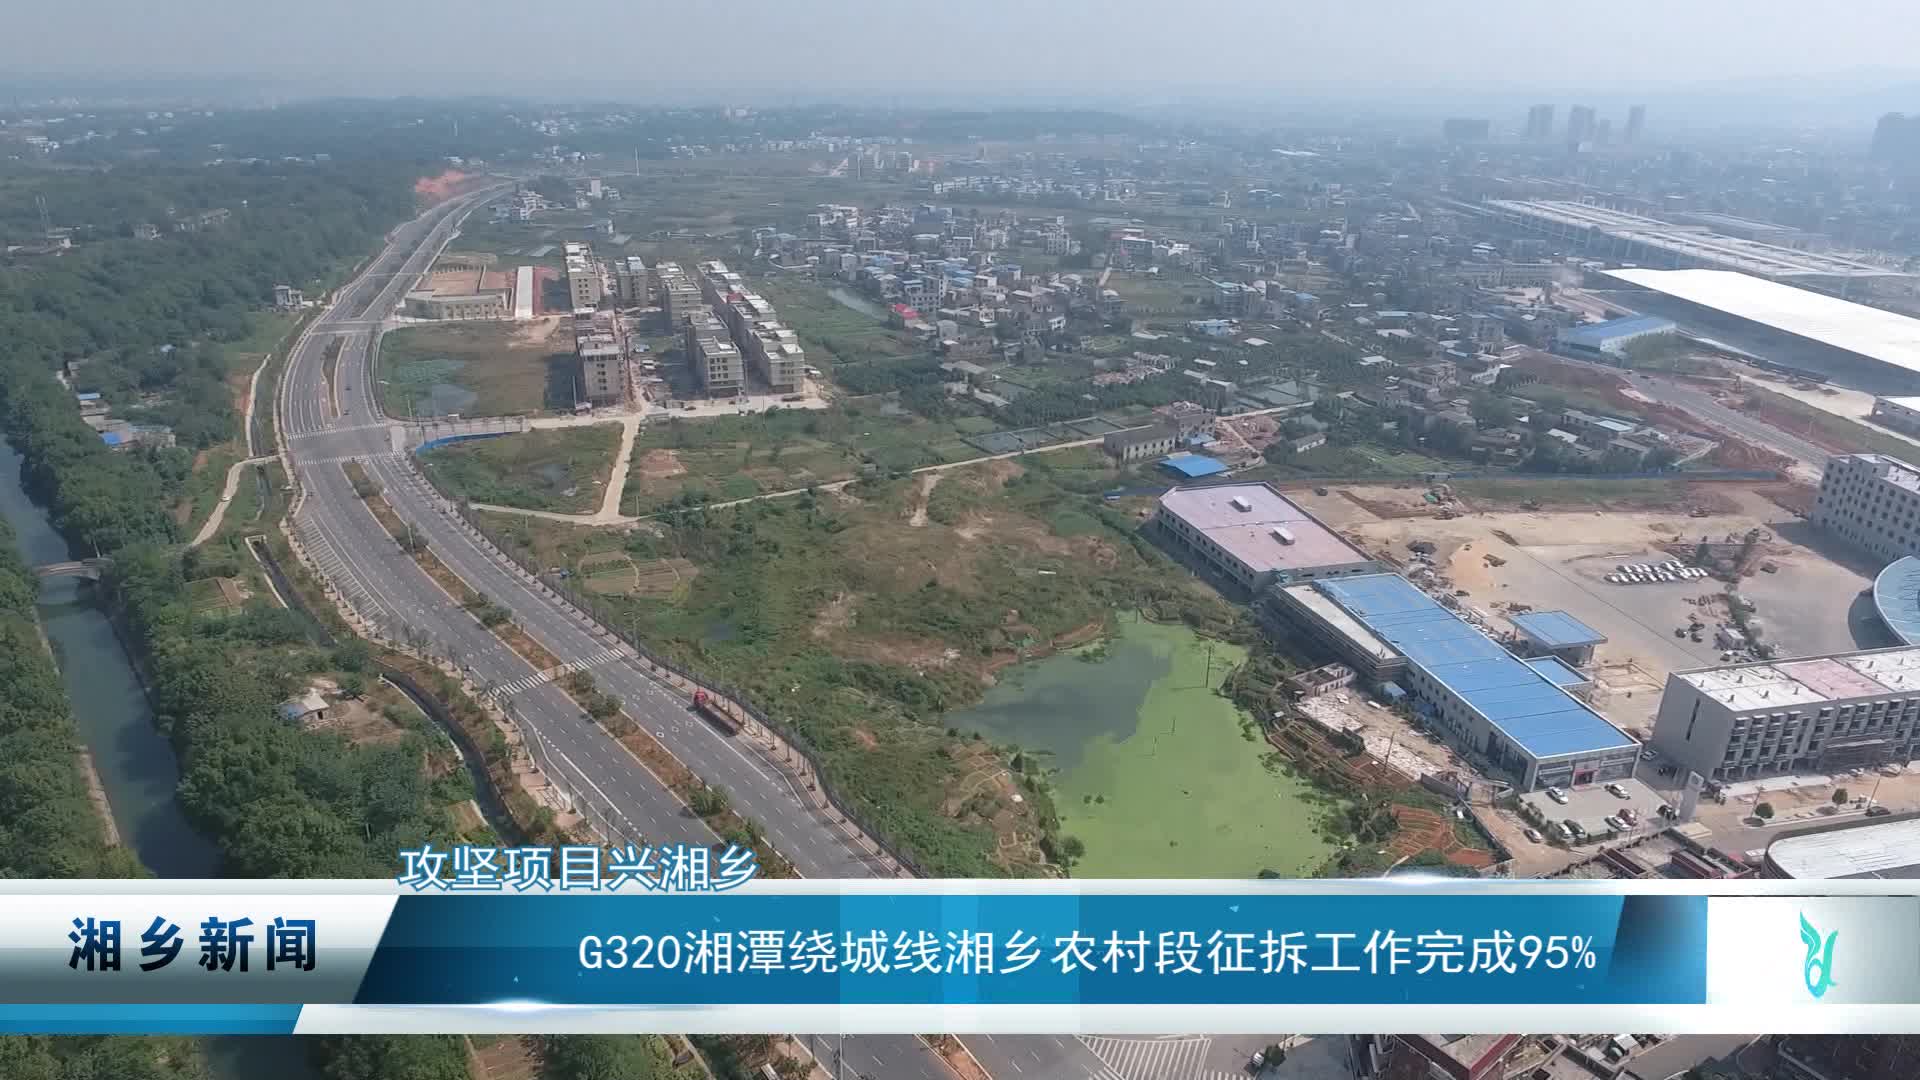 【攻坚项目兴湘乡】g320湘潭绕城线湘乡农村段征拆工作完成95%